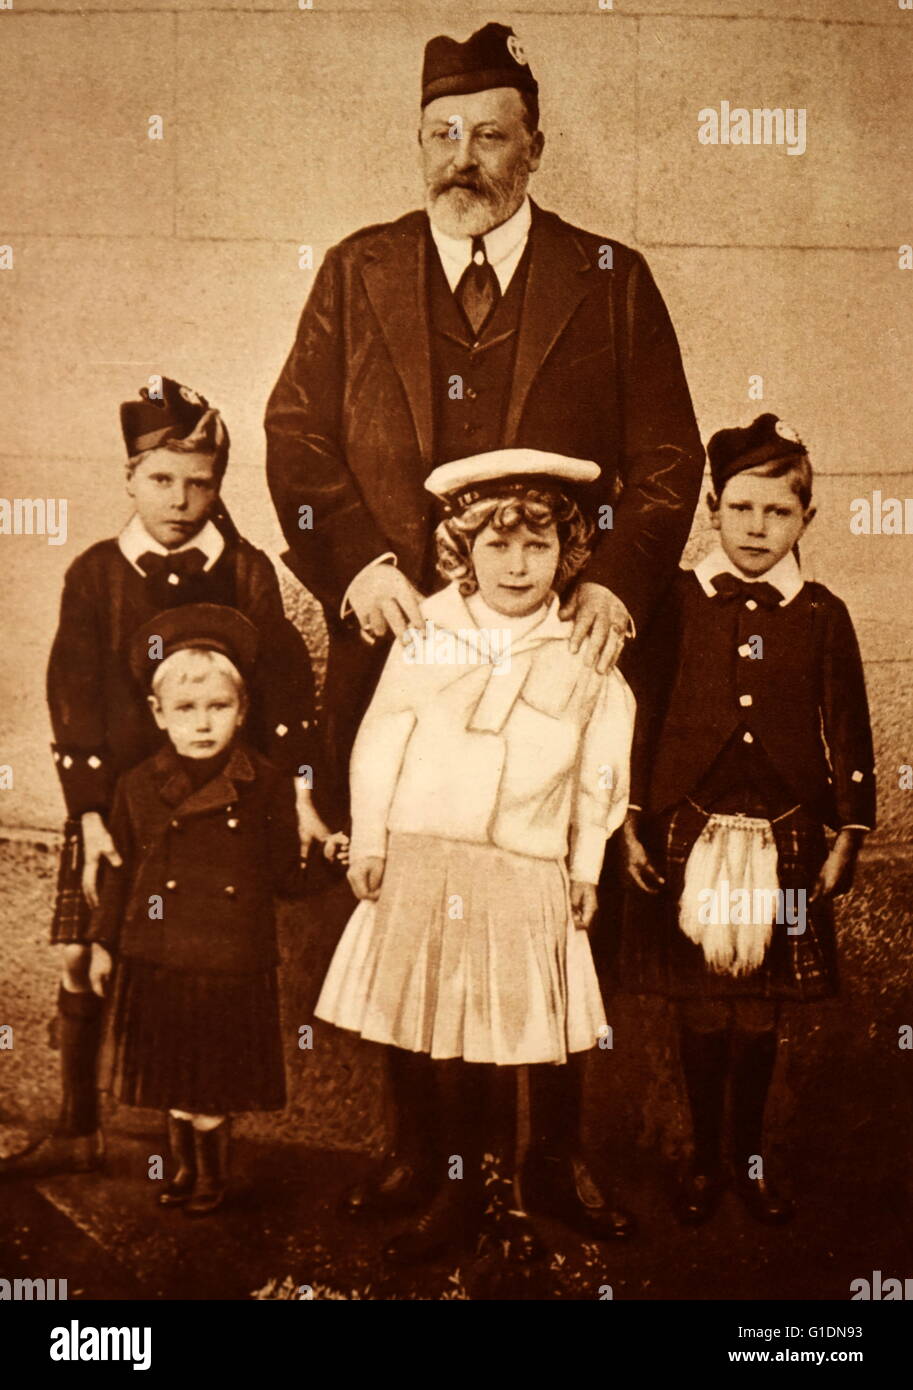 Fotografía del Rey Eduardo VIII (1894-1972) con sus nietos: Prince Albert Frederick Arthur George (1895-1952), el Príncipe Henry, Duque de Gloucester (1900-1974), María, Princesa Real y condesa de Harewood (1897-1965) y el Príncipe George, duque de Kent (1902-1942). Fecha Siglo XX Foto de stock